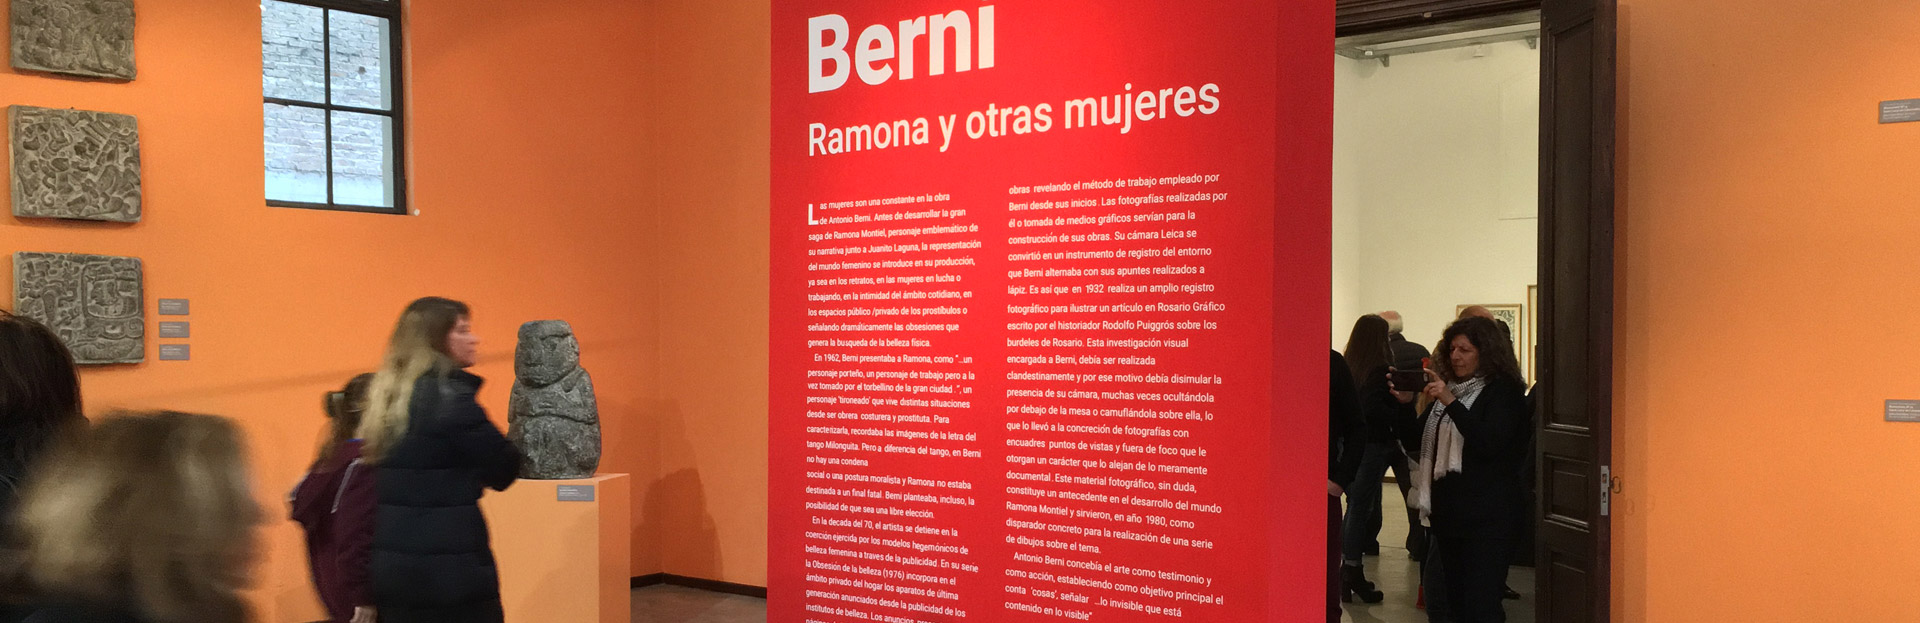 Visita guiada a la exposición de Berni por la curadora Cecilia Rabossi